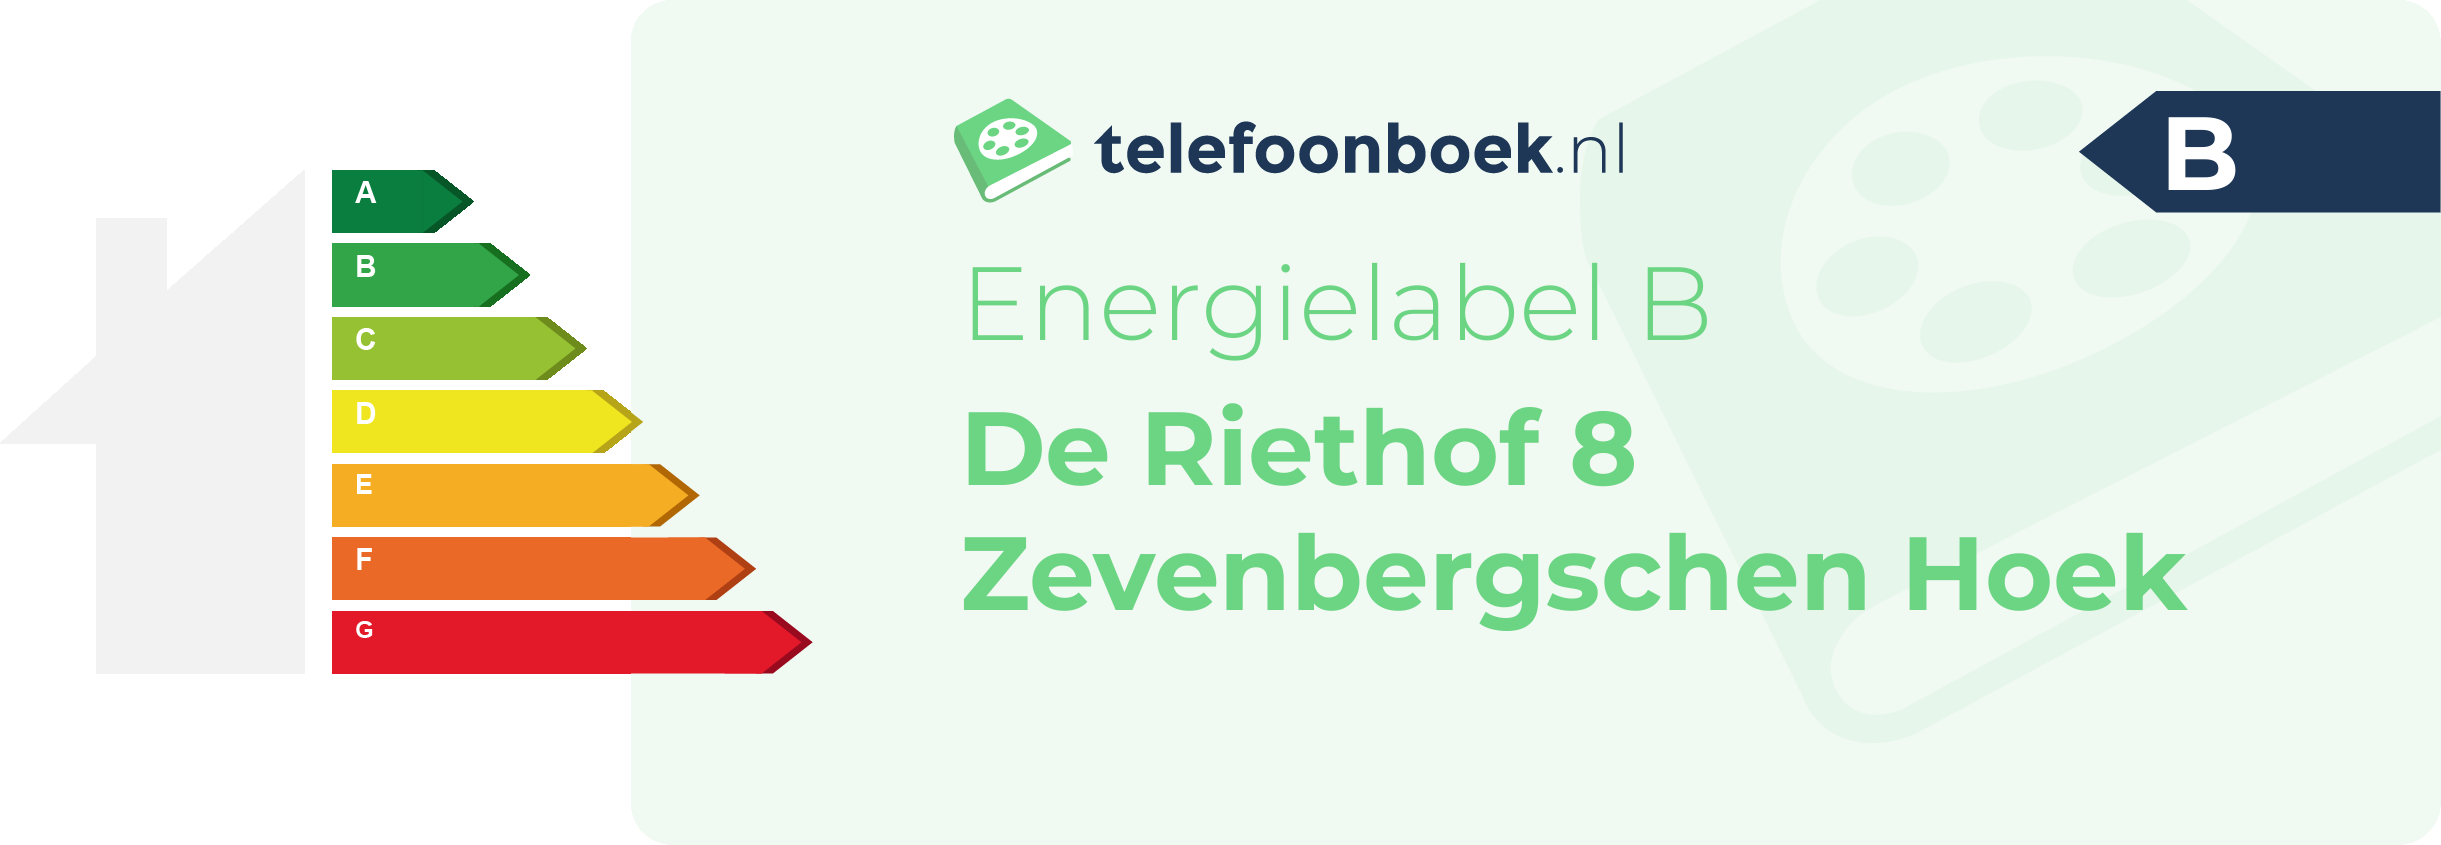 Energielabel De Riethof 8 Zevenbergschen Hoek